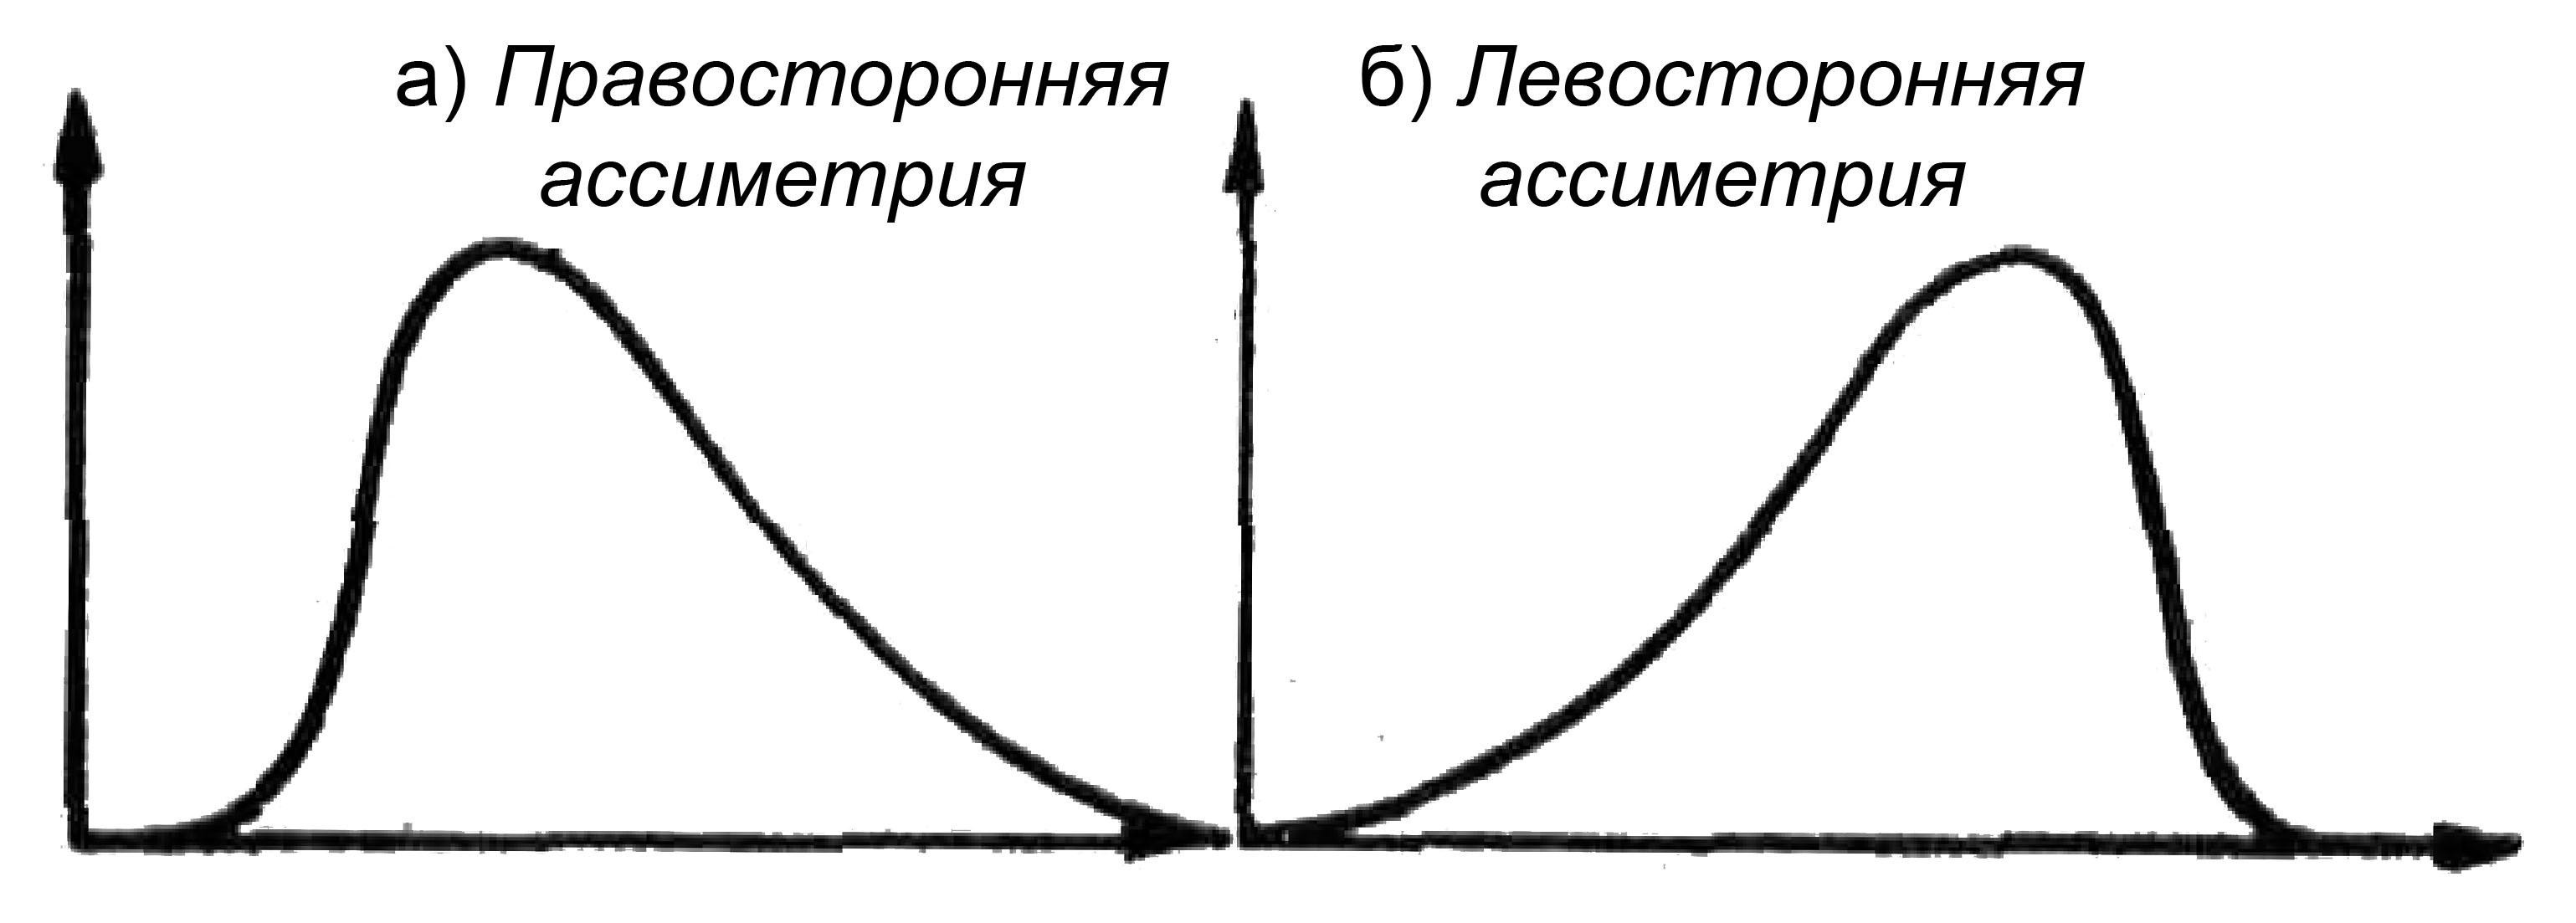 Вид графика в зависимости от значения коэффициента асимметрии